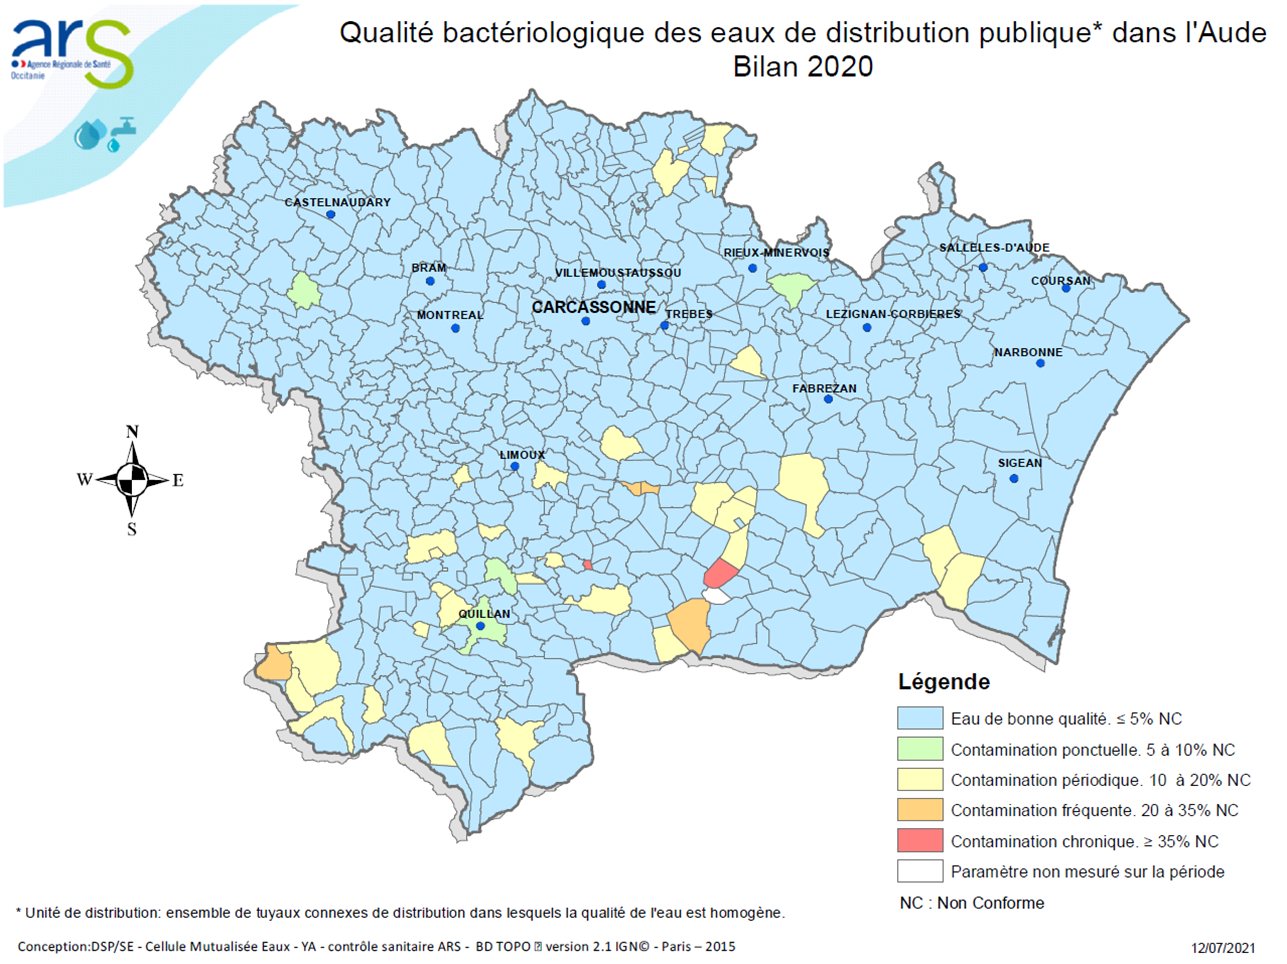 Bactériologie Aude (Bilan eau 2020)